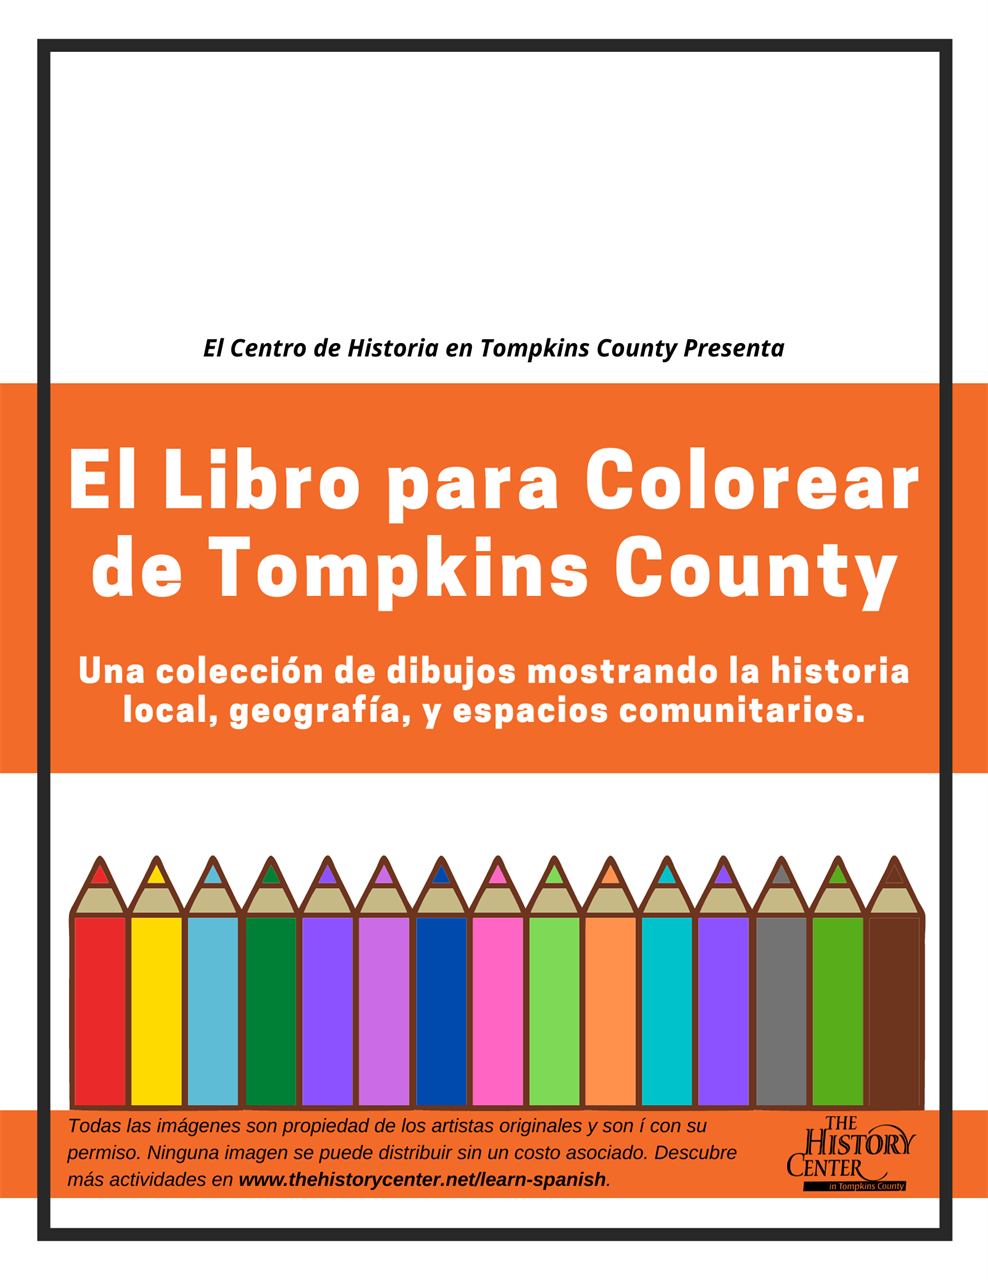 "El Libro para Colorear de Tompkins County"